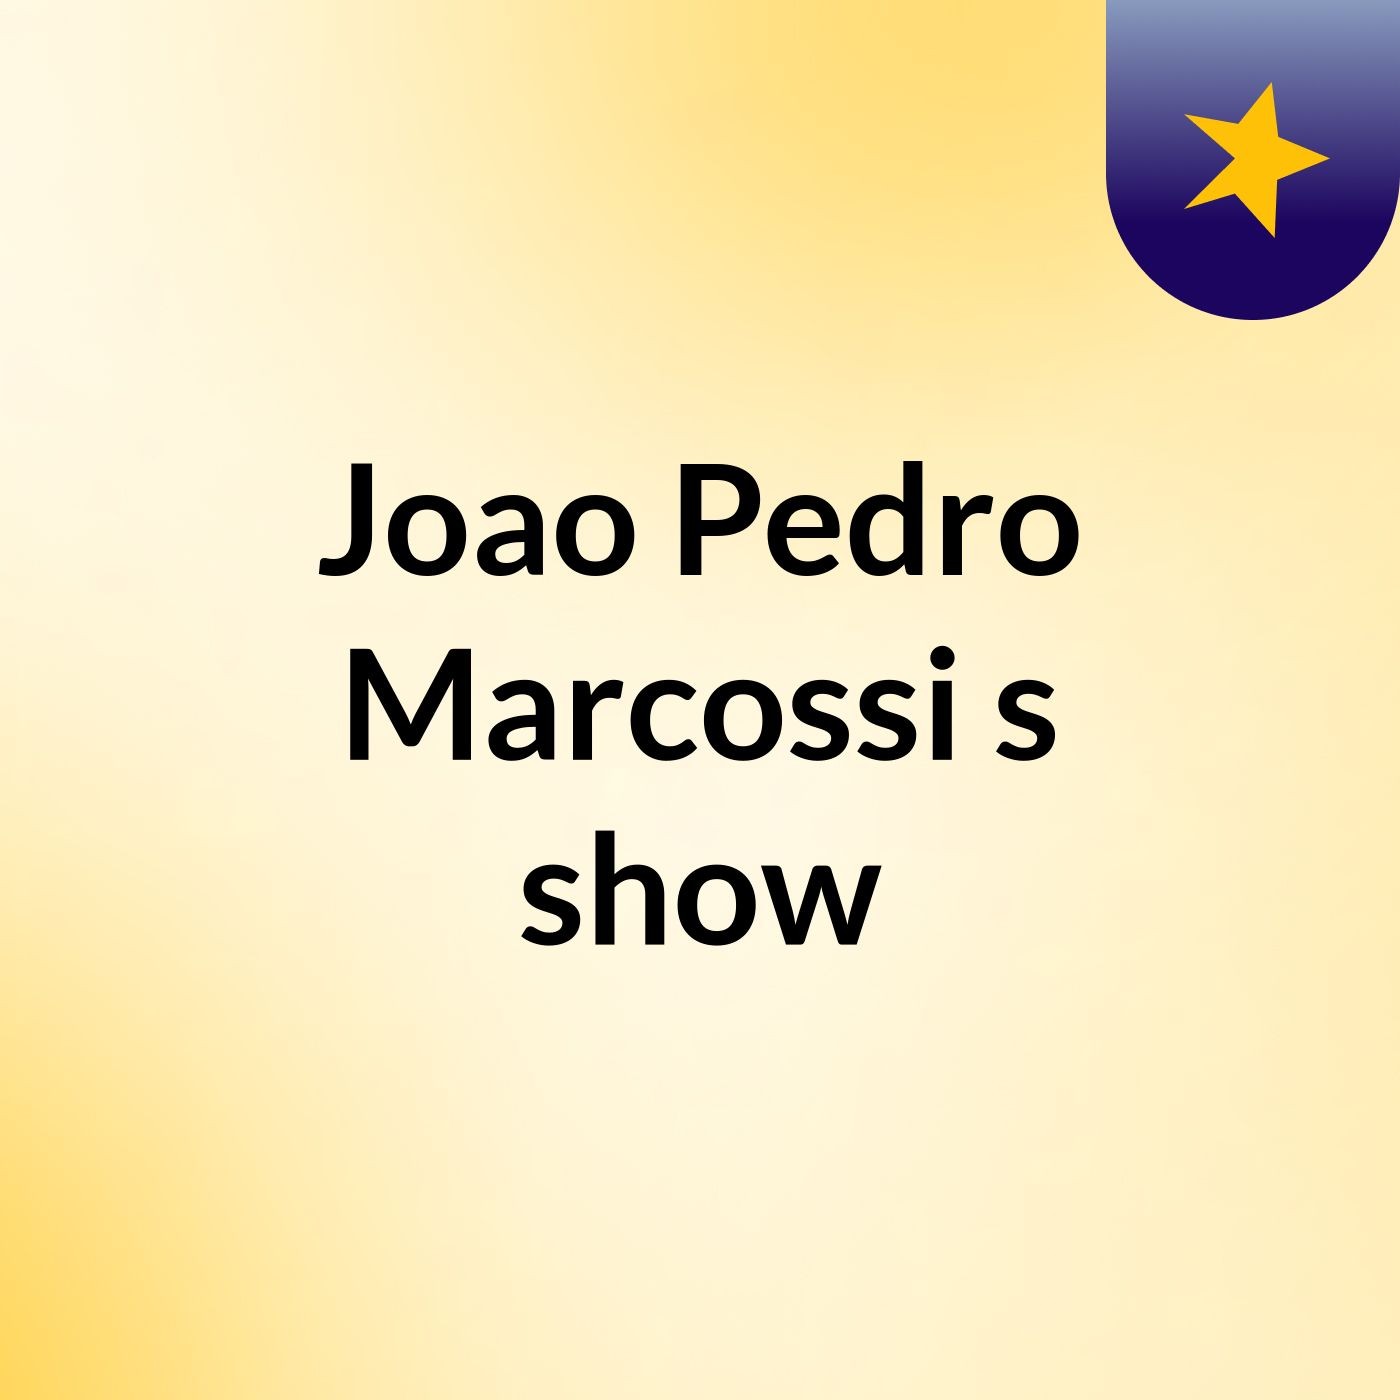 Joao Pedro Marcossi's show